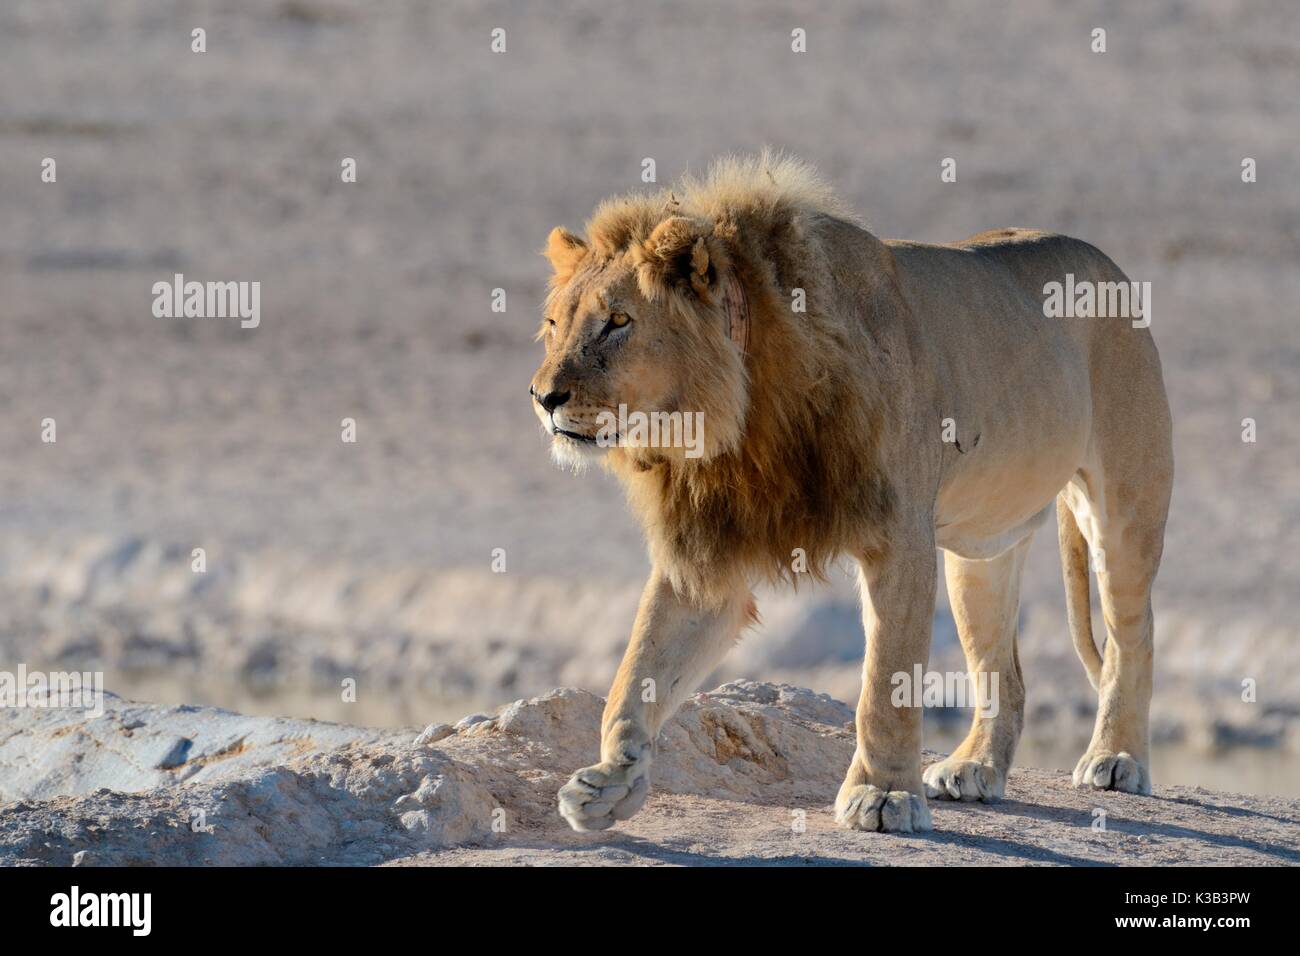 African lion (Panthera leo) with tracking collar, walking, Etosha Nationalpark, Namibia Stock Photo